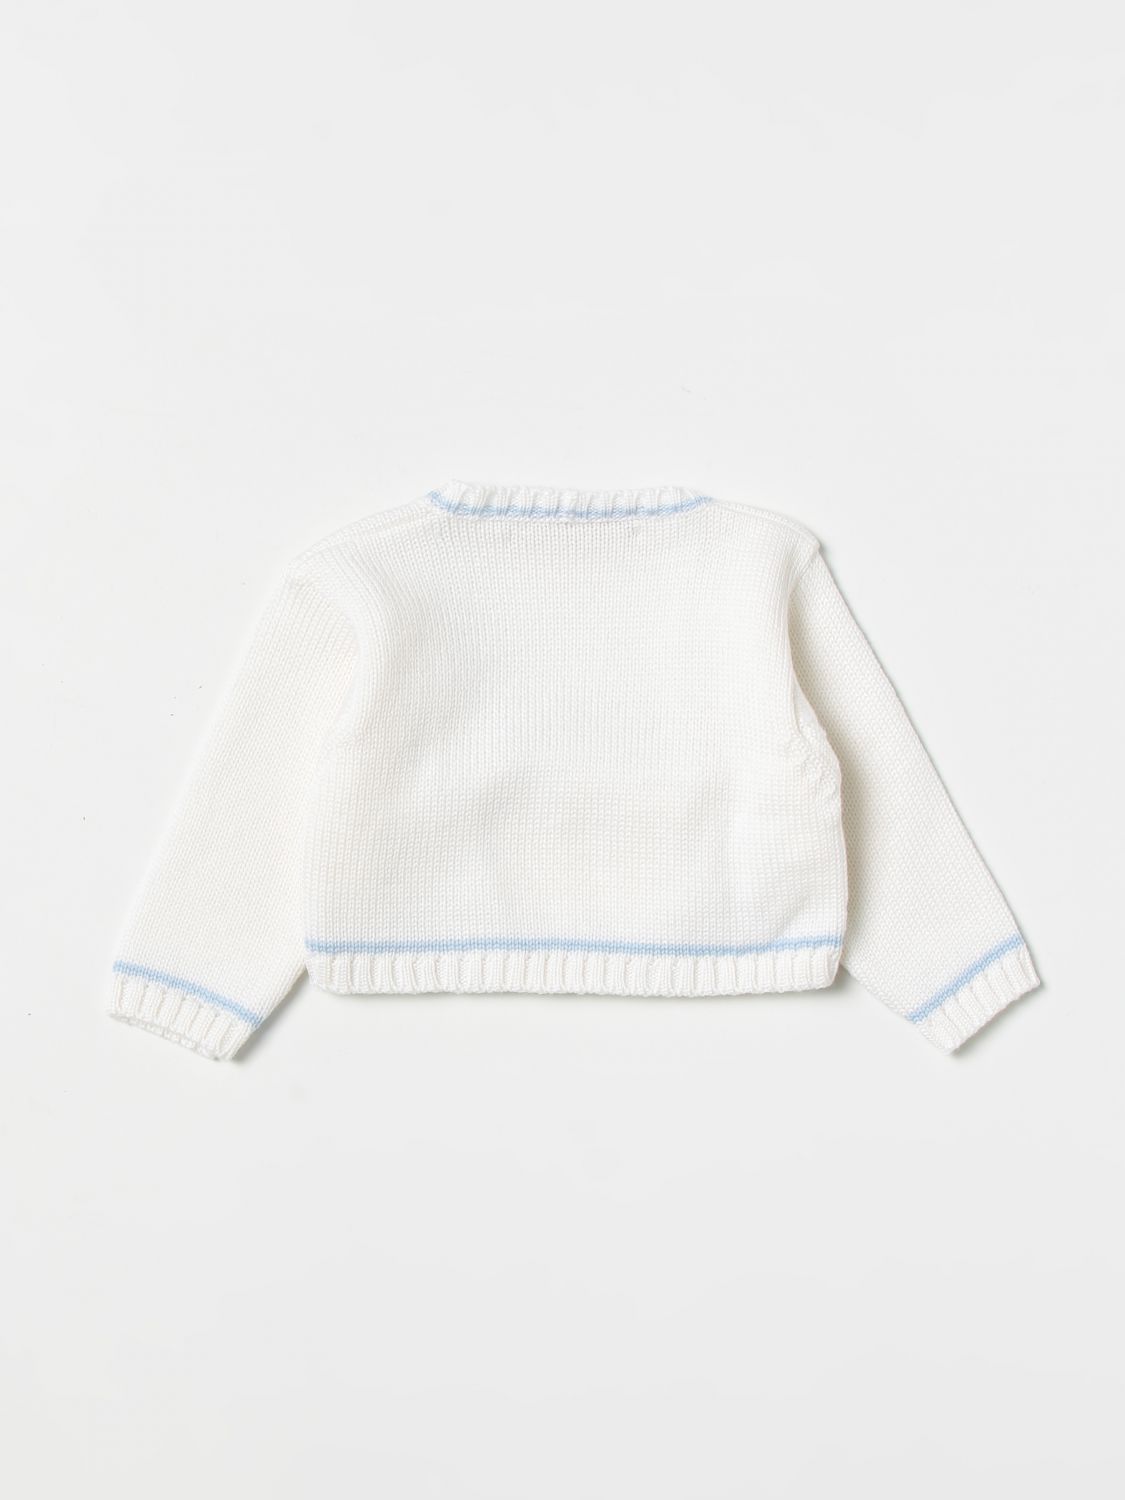 Sweater La Stupenderia: La Stupenderia sweater for baby yellow cream 2